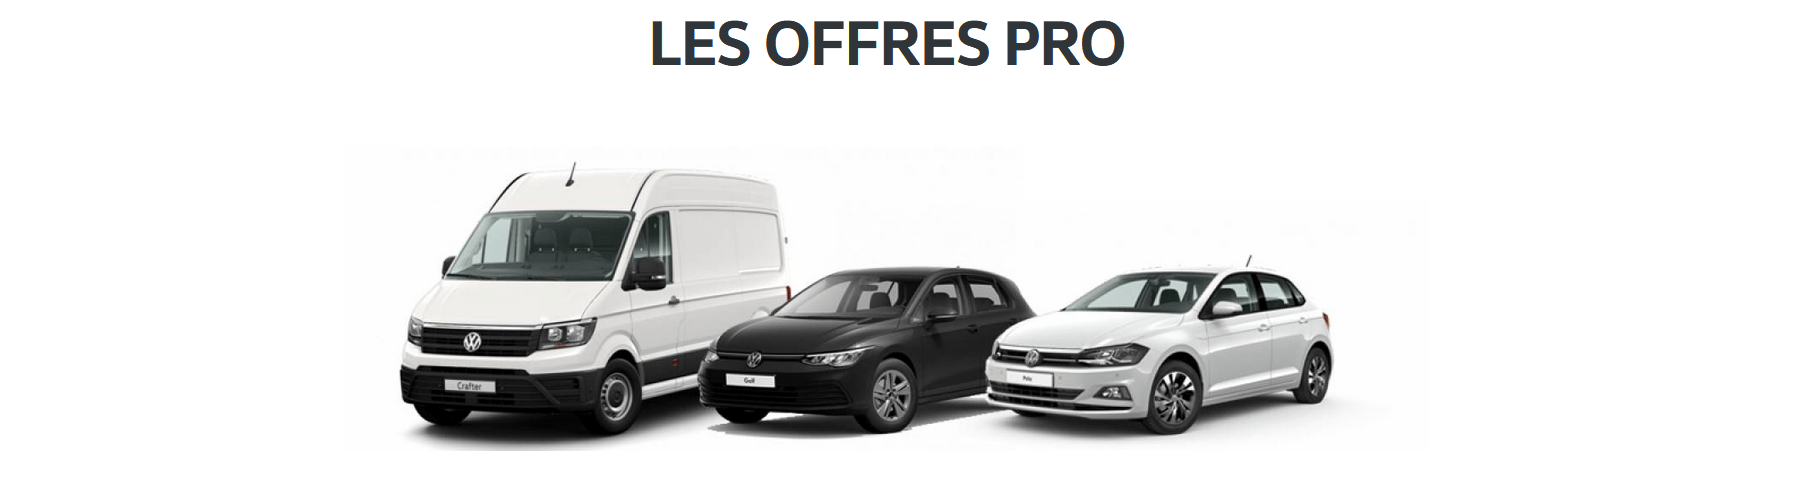 Volkswagen Utilitaires Hazebrouck AUTO-EXPO - Les offres exclusives chez votre partenaire VGRF Fleet Hauts-de-France